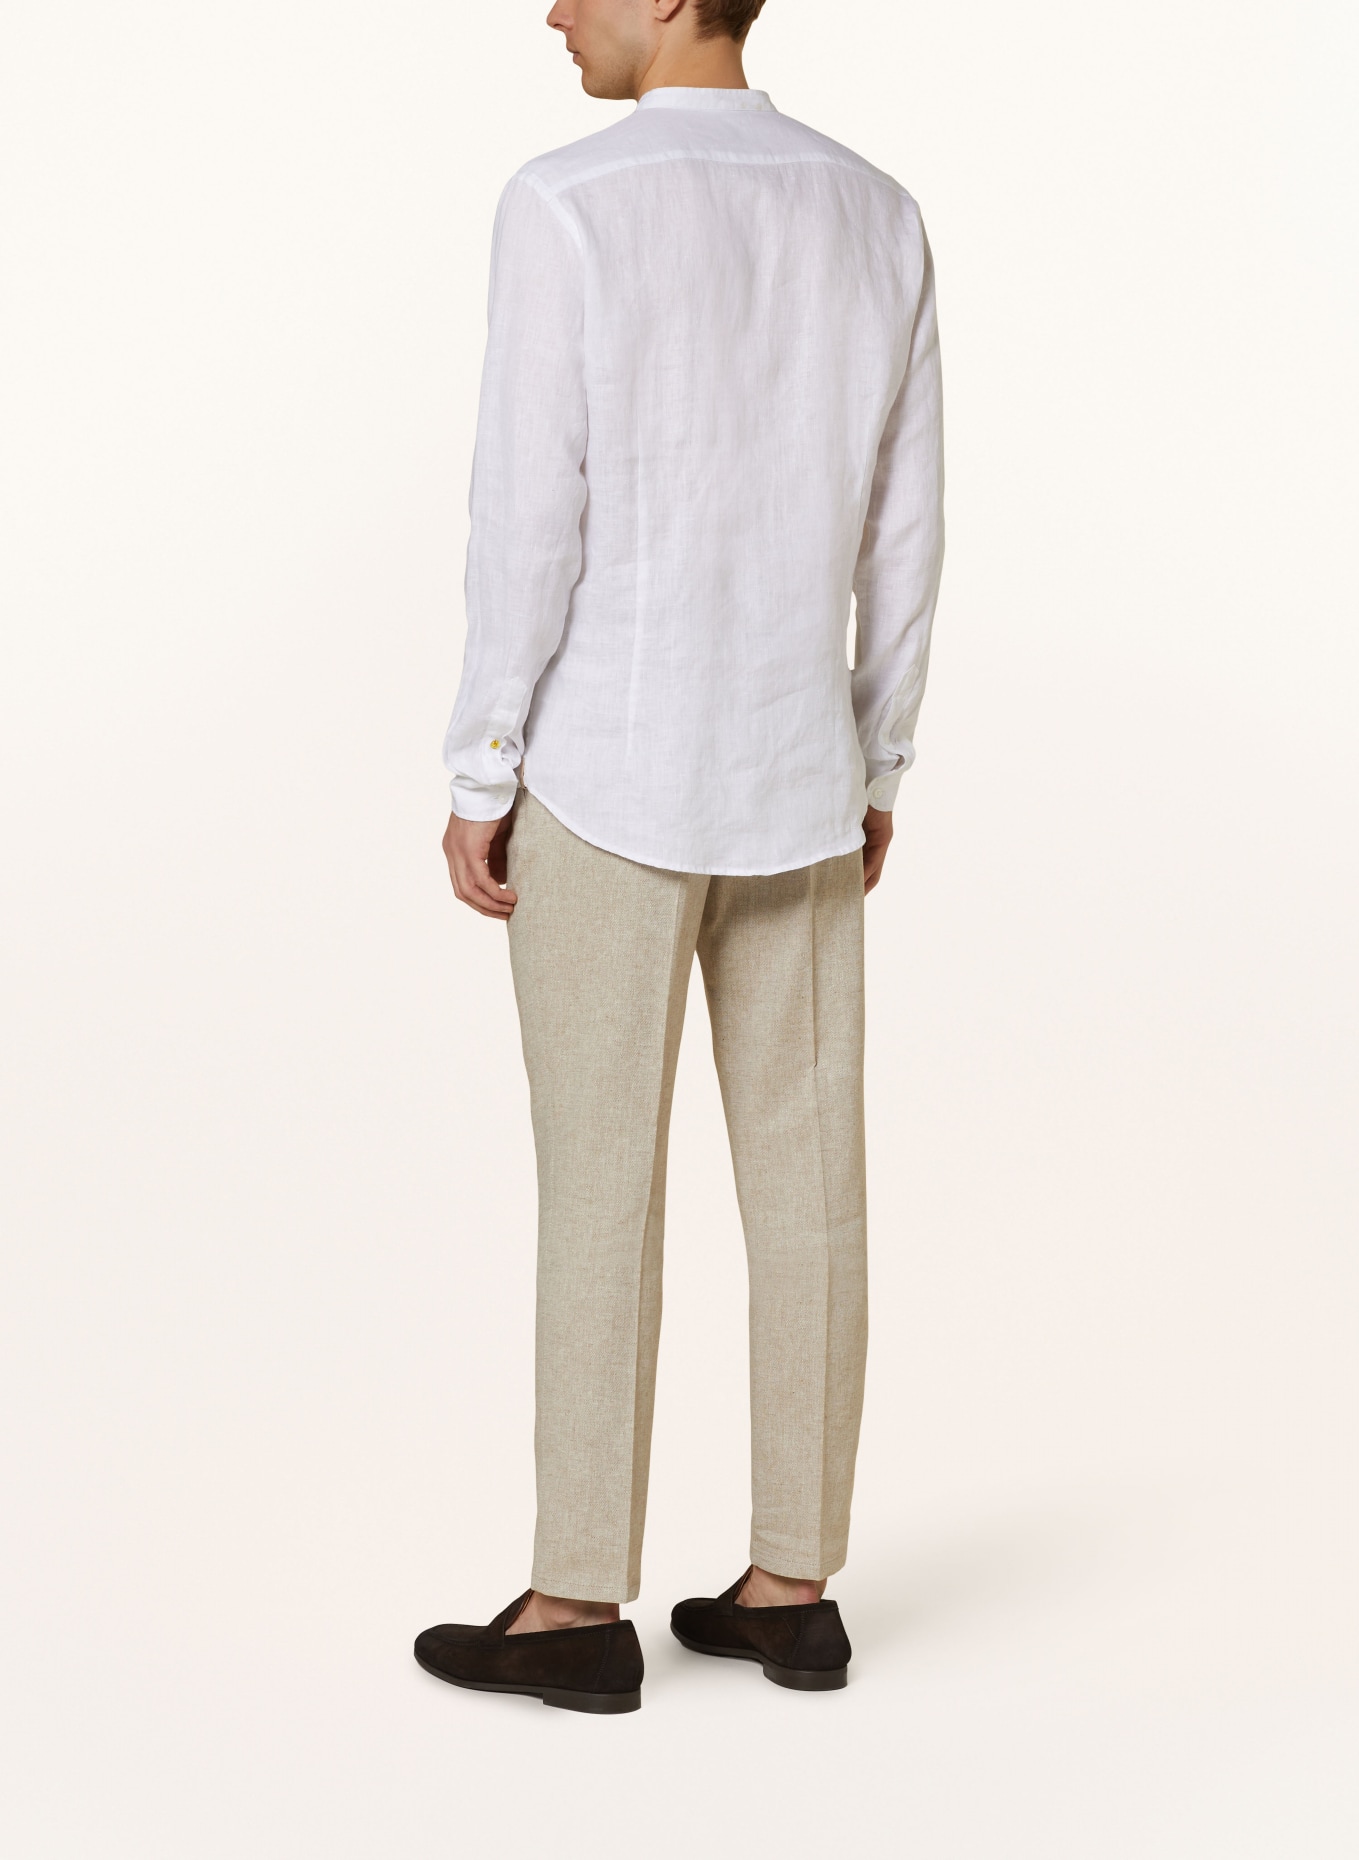 Q1 Manufaktur Leinenhemd Slim Relaxed Fit mit Stehkragen, Farbe: WEISS (Bild 3)